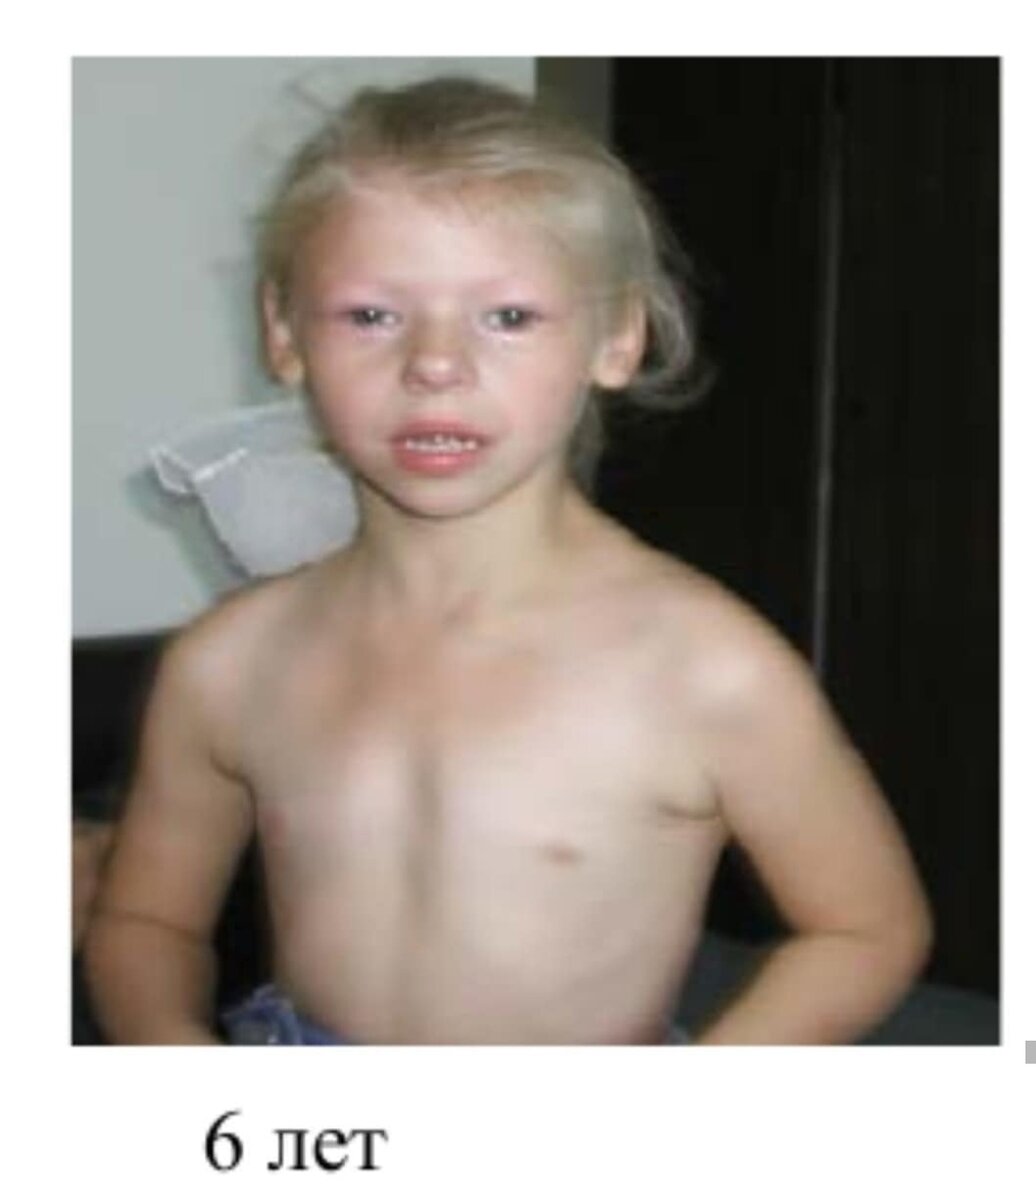 синдром рассела сильвера фото детей